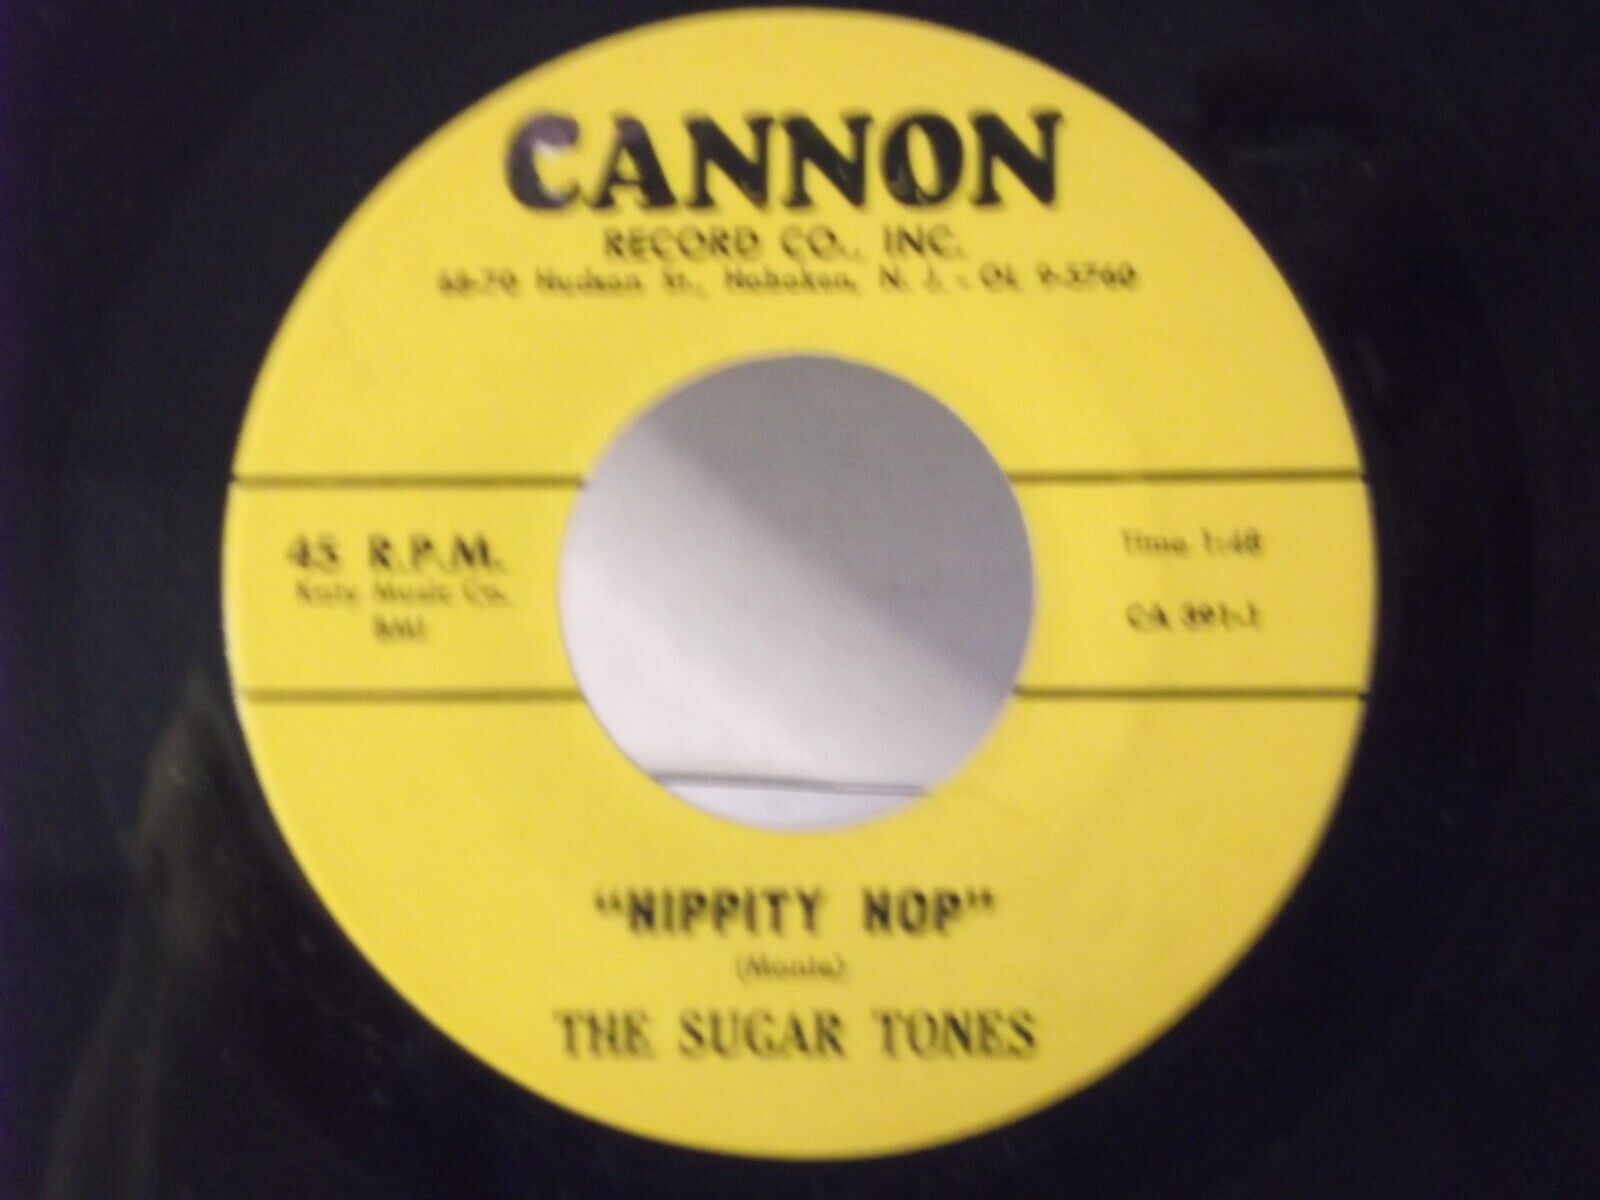 The Sugar Tones,Cannon 391,\